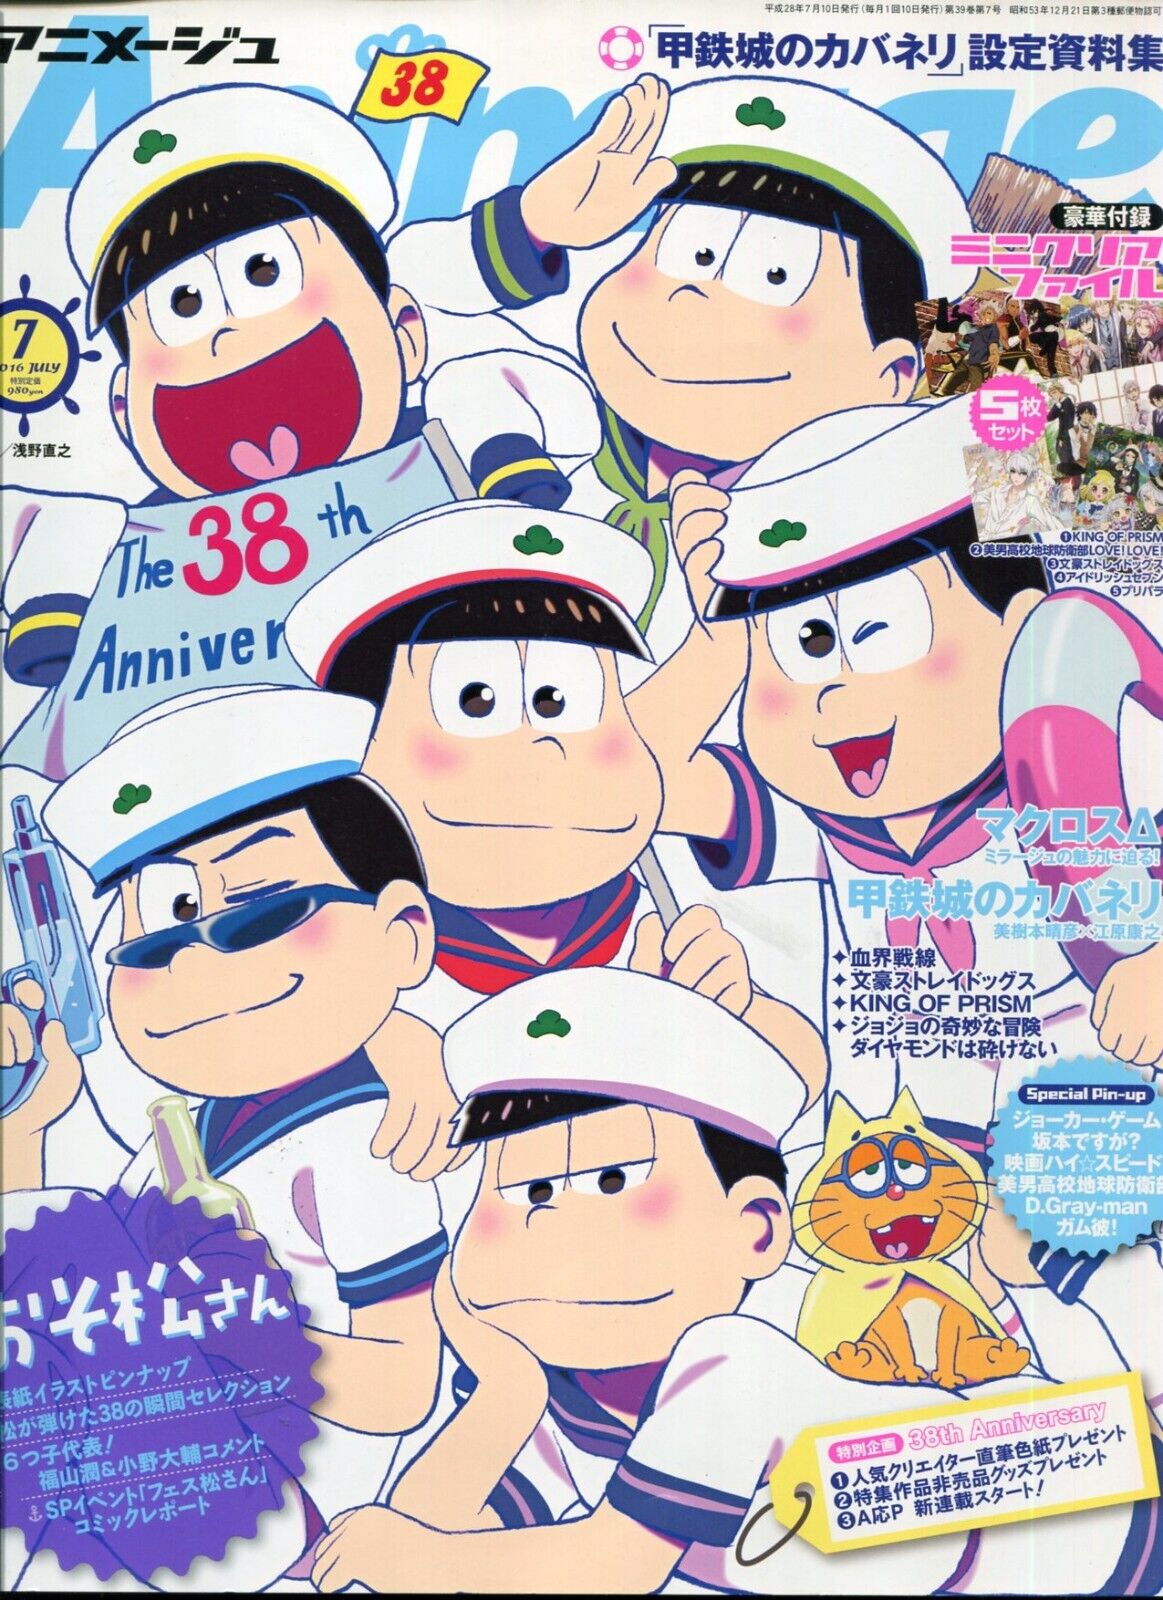 Animage animege 2016 July. Japanese Magazine Anime Animation Manga 240608